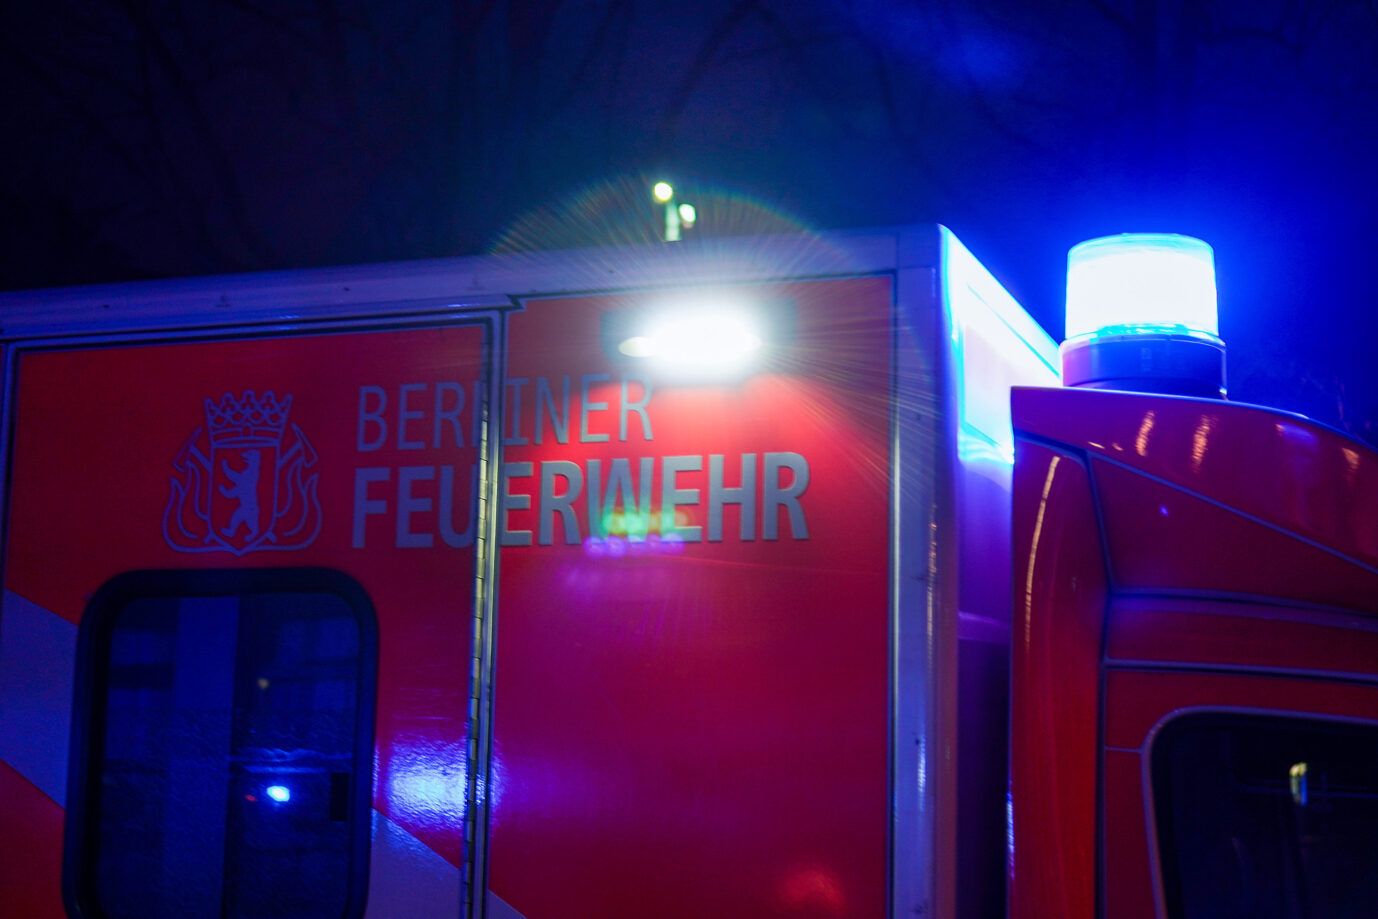 Brandanschlag: Die Berliner Feuerwehr löschte die Flammen im Rathaus Tiergarten mit einem C-Rohr. Foto: picture alliance / Fotostand / Reuhl